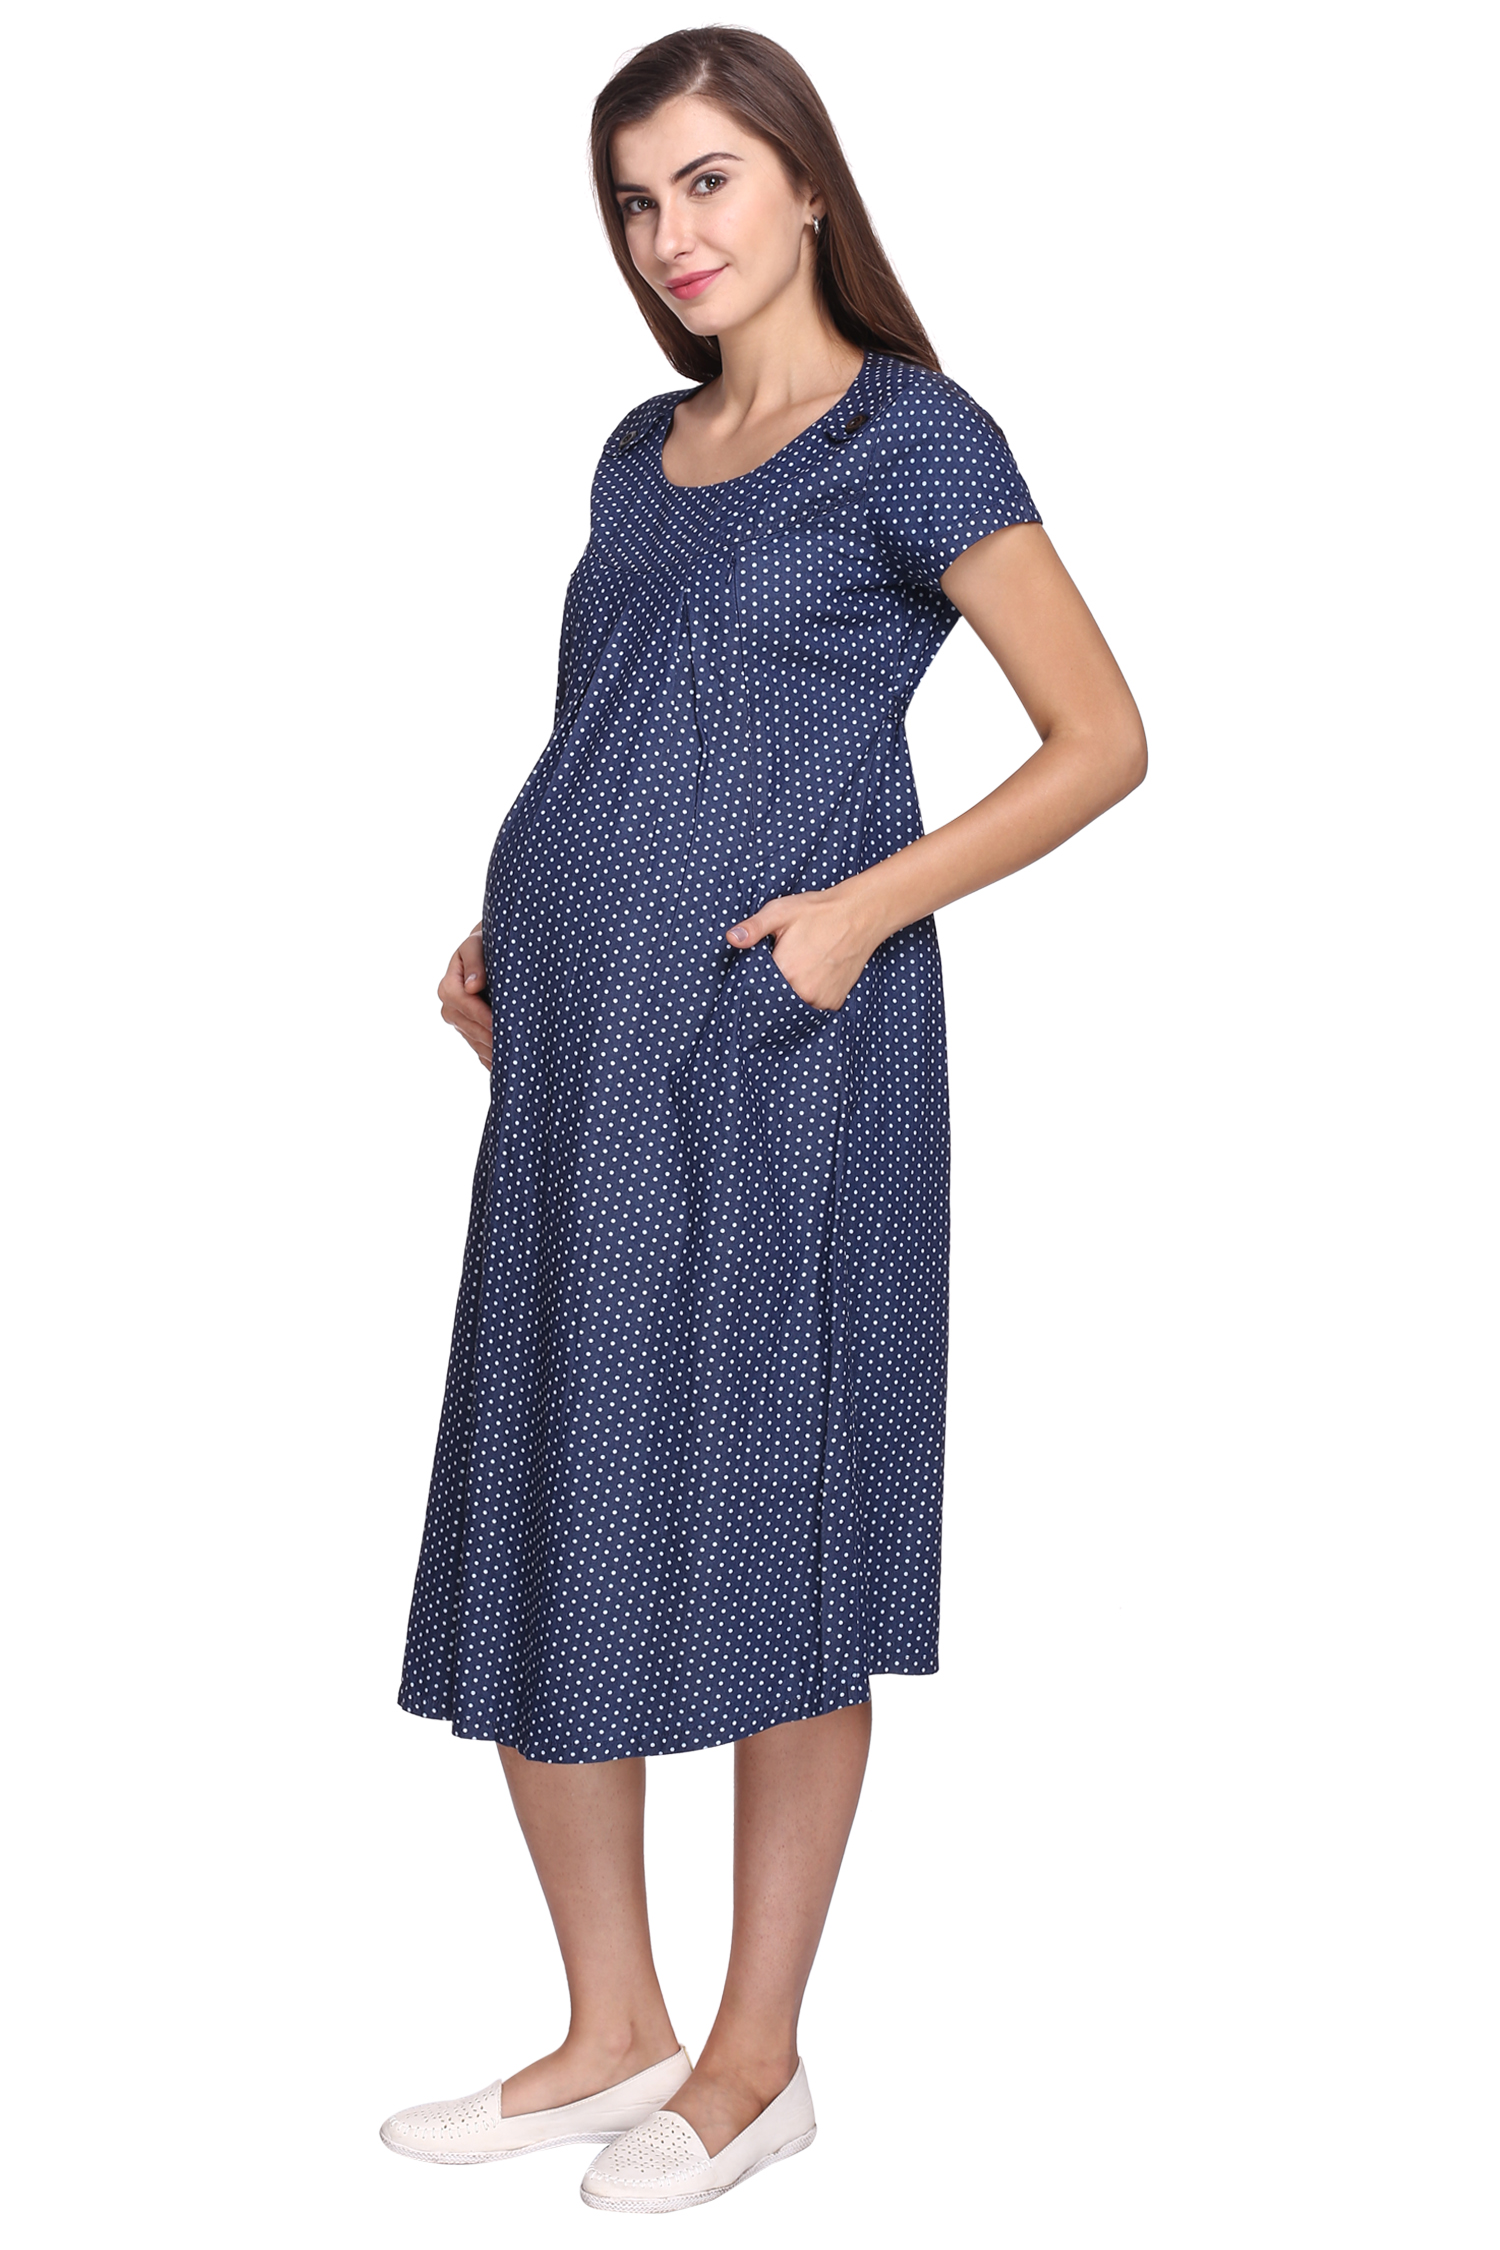 Buy MomToBe Women's Denim Maternity Dress, Blue Online @ ₹1549 from ...